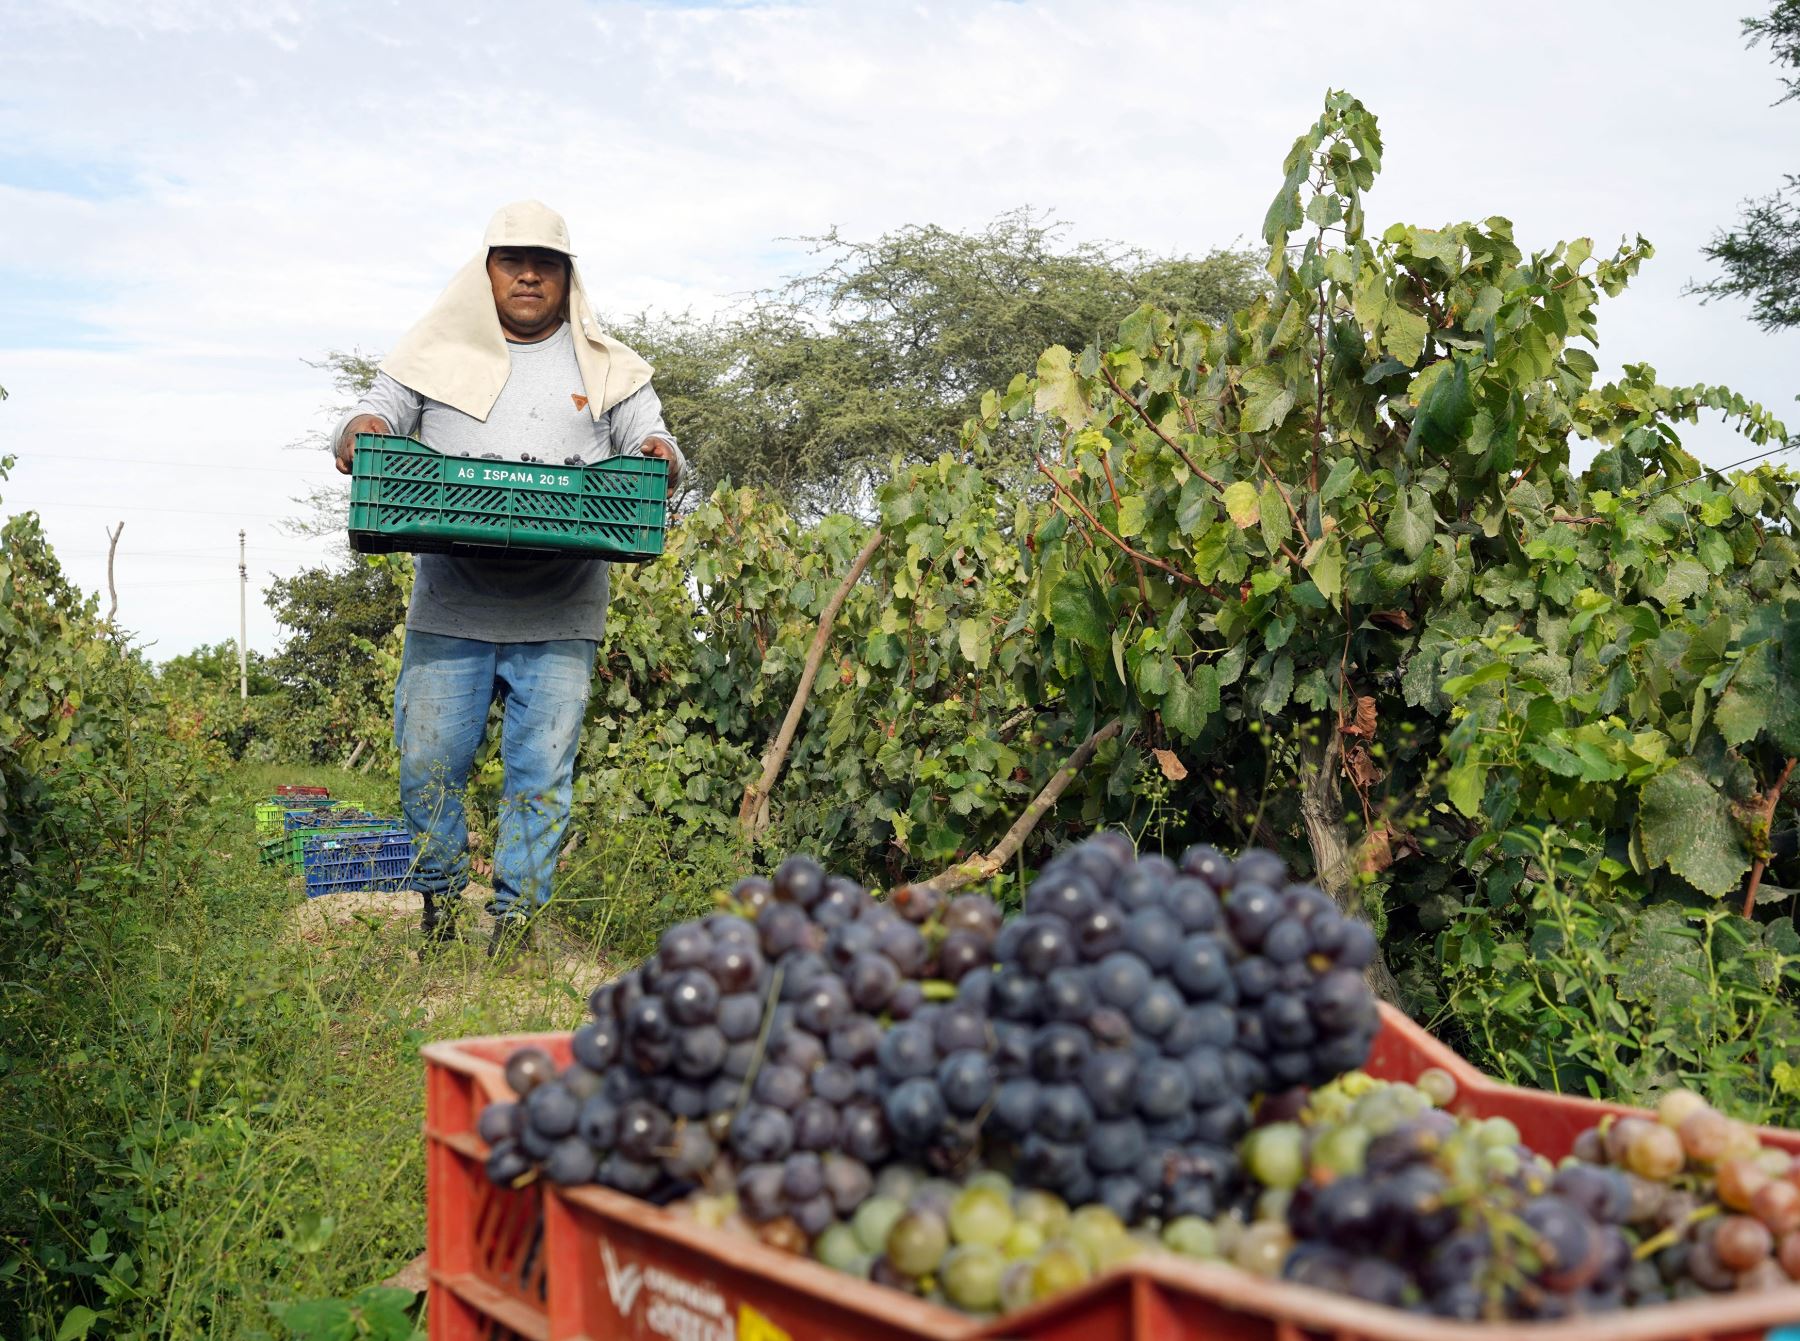 Productores vitivinícolas de Ica adelantan un mes la cosecha de uva debido a la ola de calor que afecta a esa región y a toda la costa norte y central del país. Foto: Genry Bautista